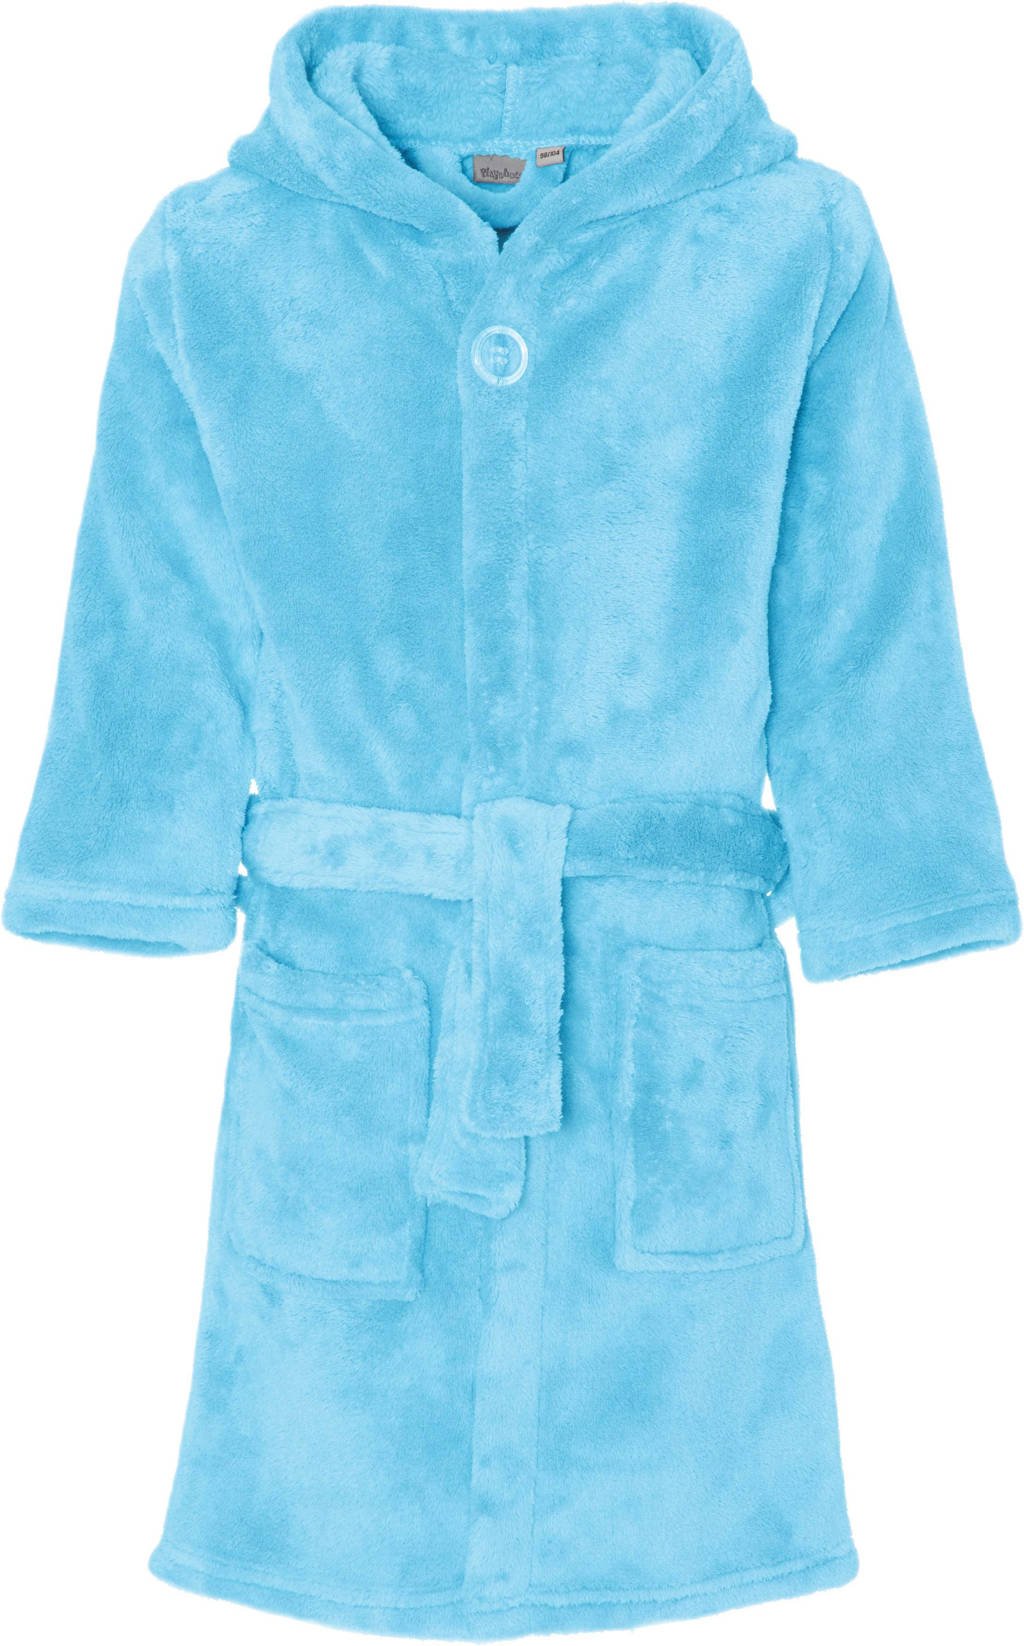 badstof badjas lichtblauw